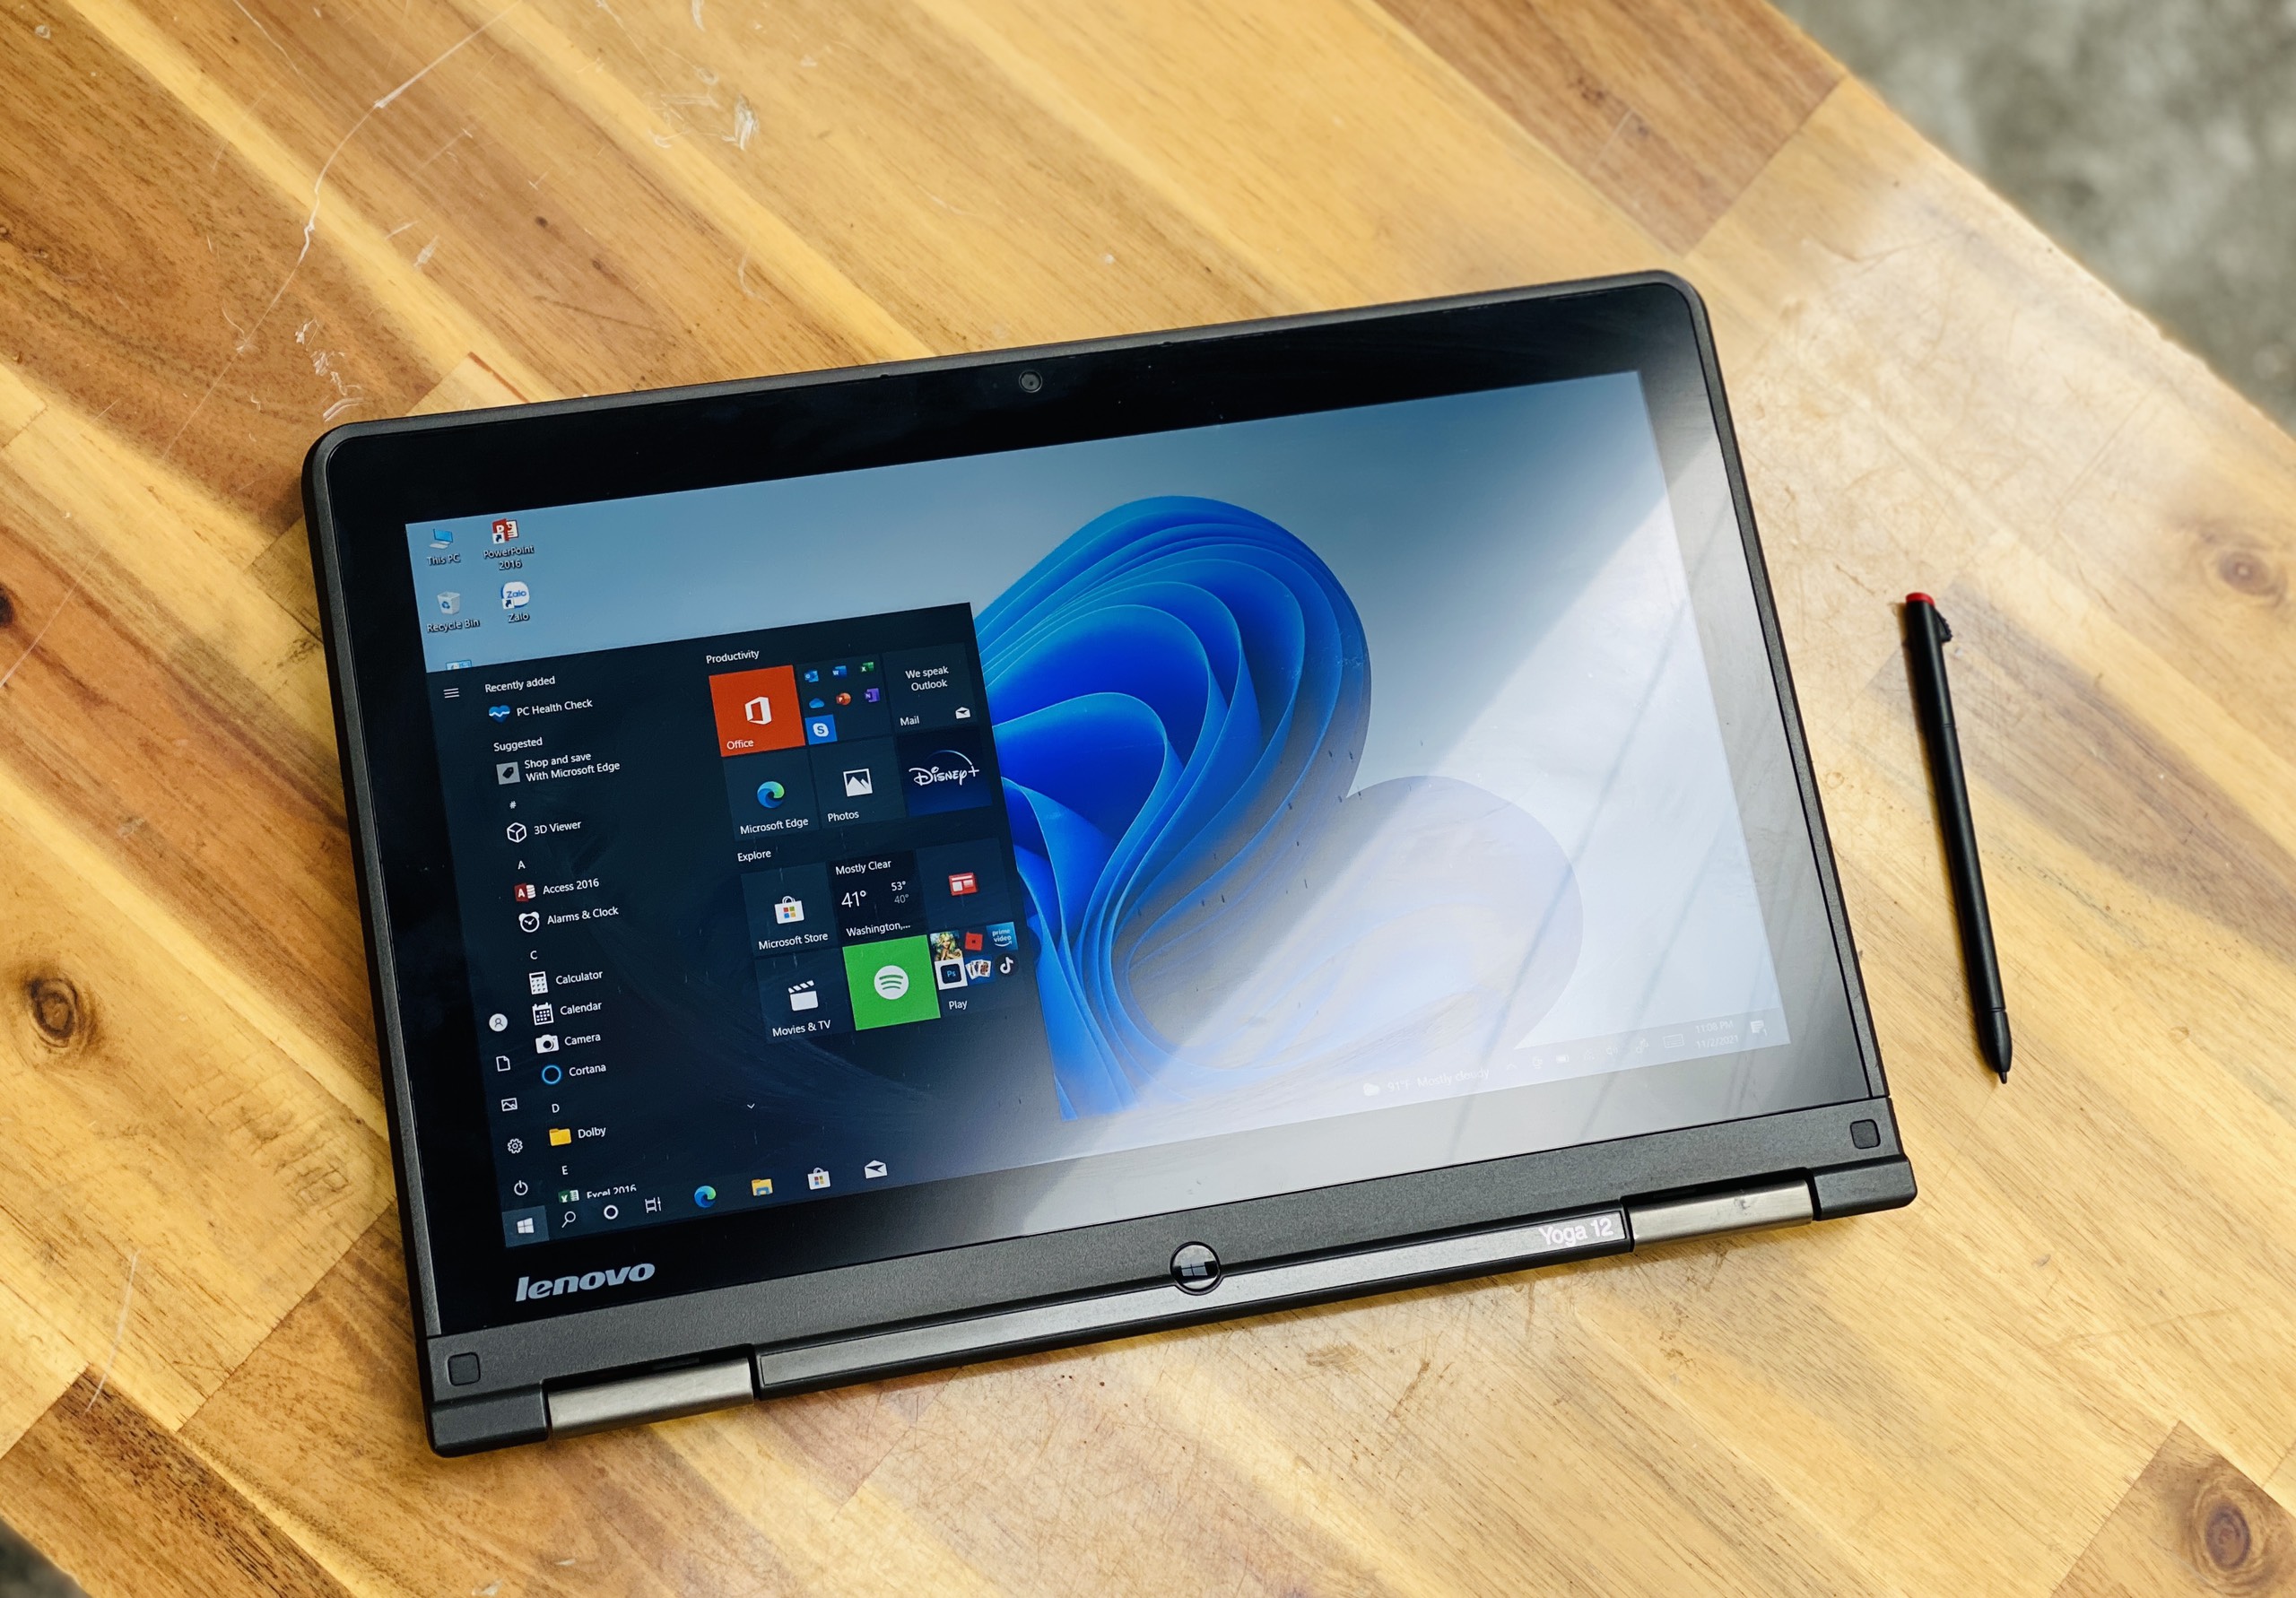 Laptop Lenovo Thinkpad Yoga 12/ i5 5200U/ 8G/ SSD256/ 12.5in/ Cảm ứng/ Xoay 360 độ 2in1/ Siêu Bền/ Giá rẻ4